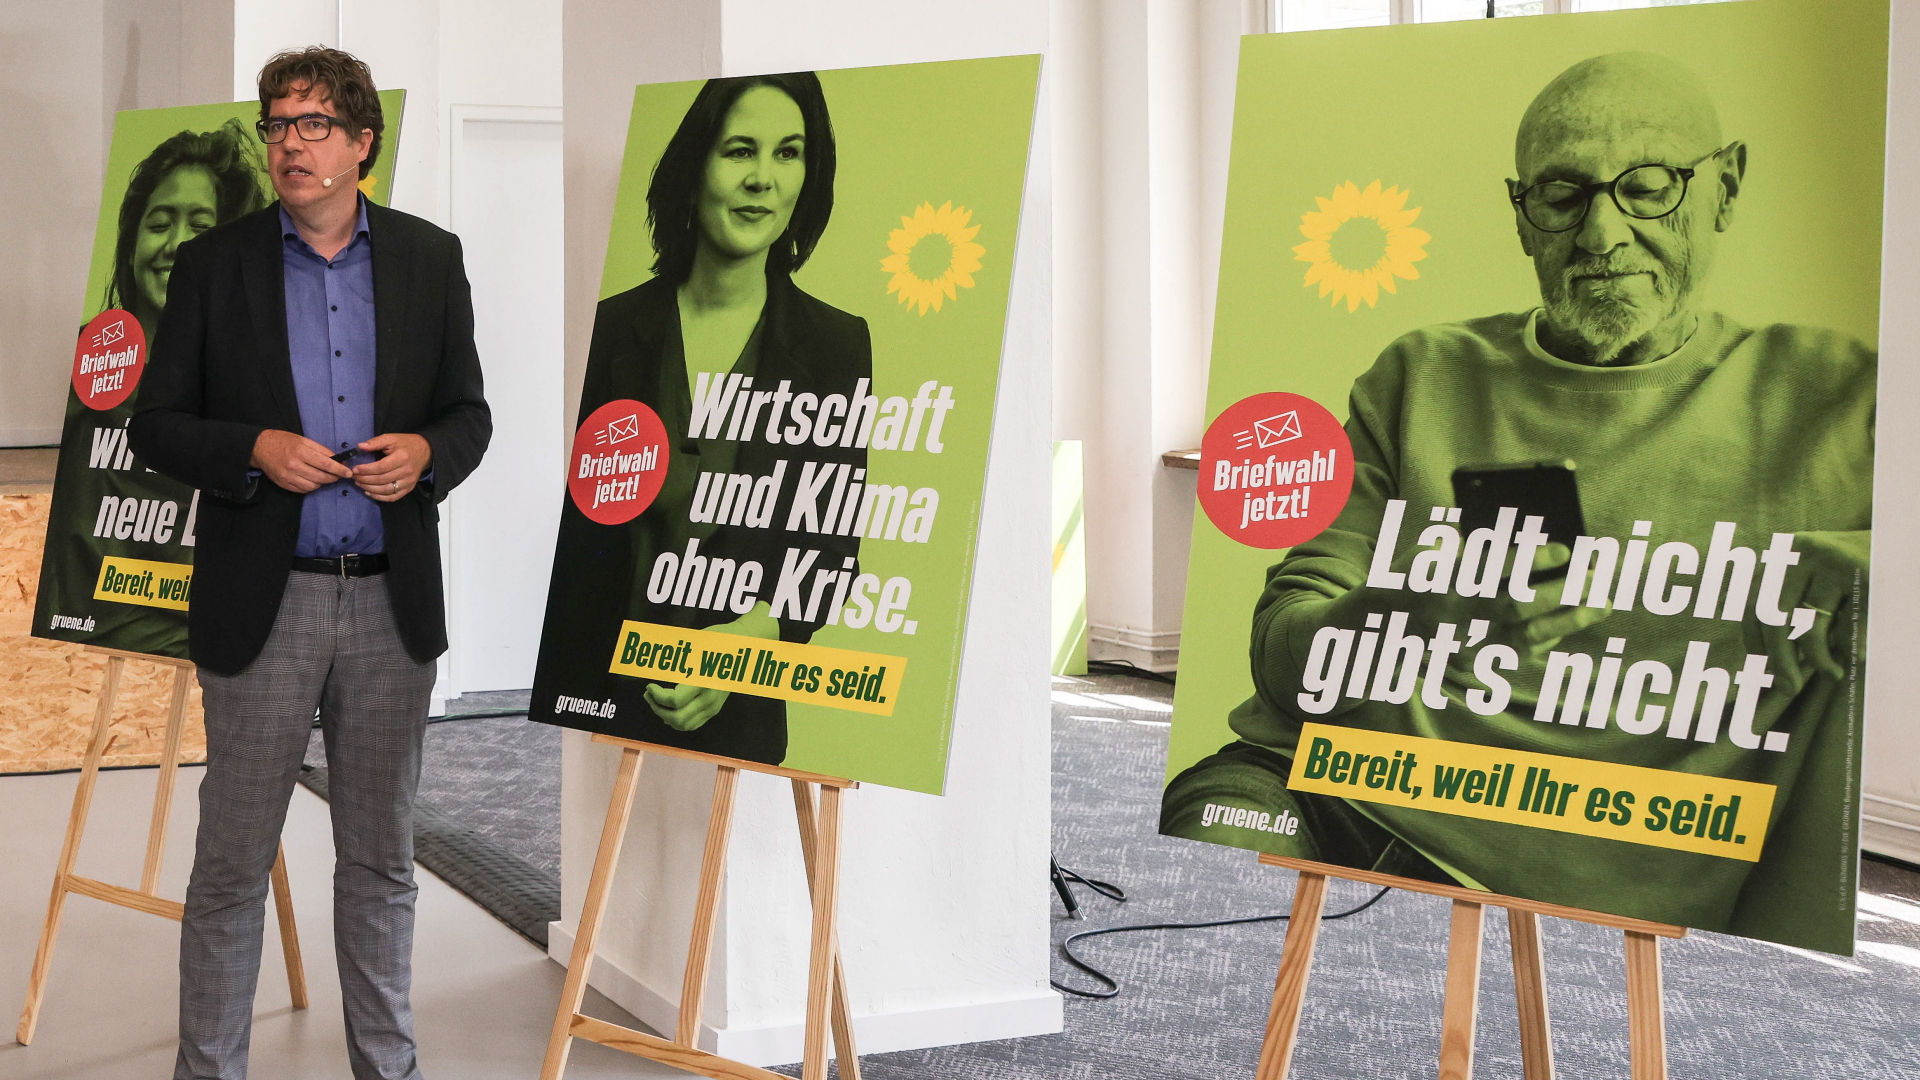 Bundesgeschäftsführer Kellner präsentiert die Wahlkampagne der Grünen. | EPA